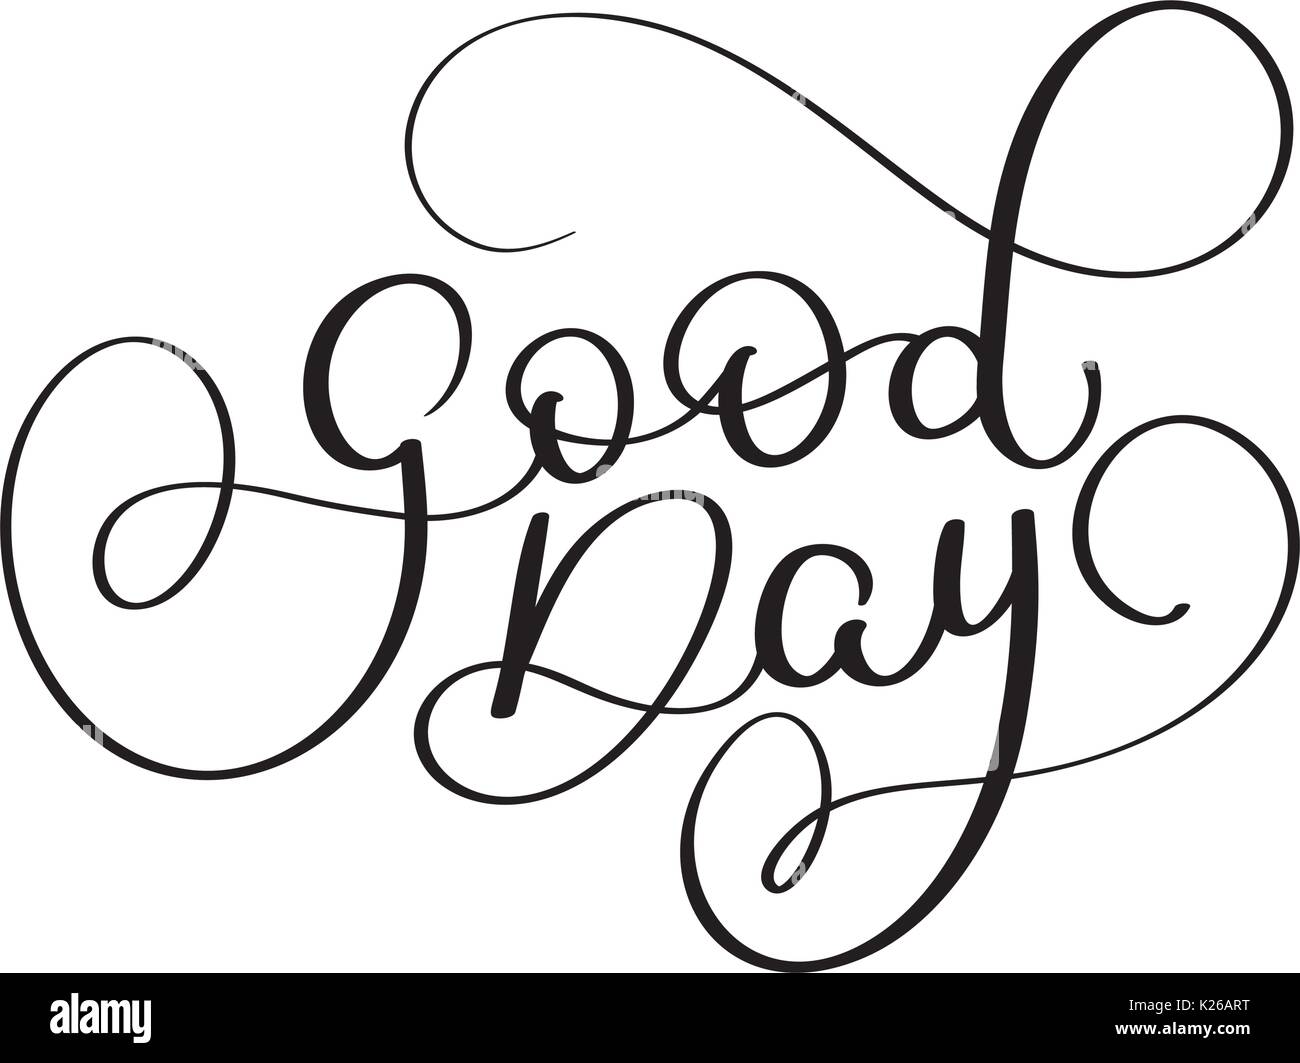 Bonne journée texte sur fond blanc. Lettrage Calligraphie Hand drawn Vector illustration EPS10. Illustration de Vecteur